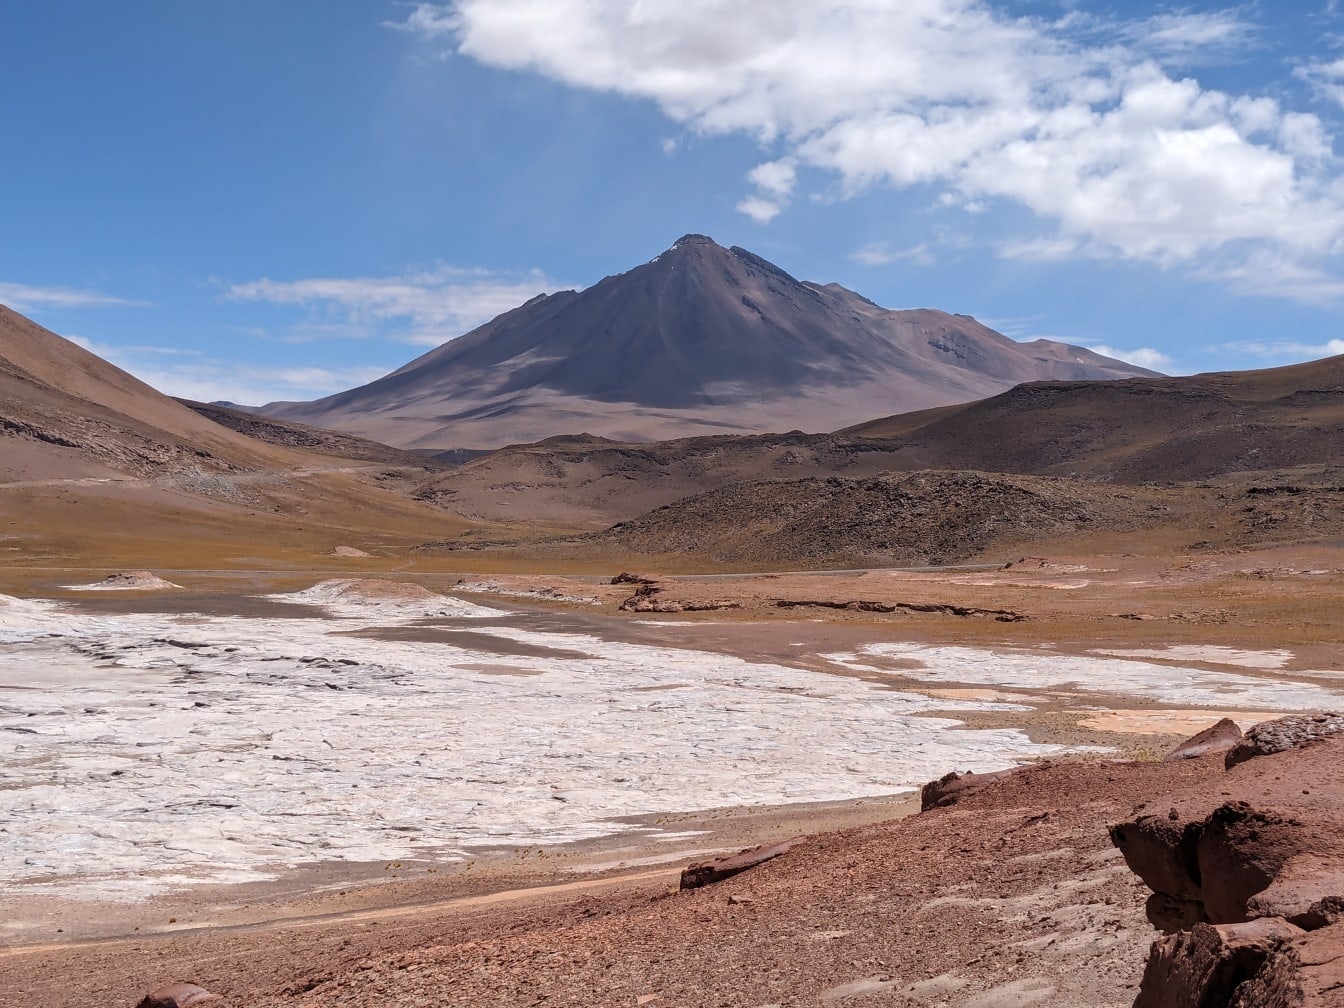 Landscape of the world’s driest desert the Atacama Desert in South America